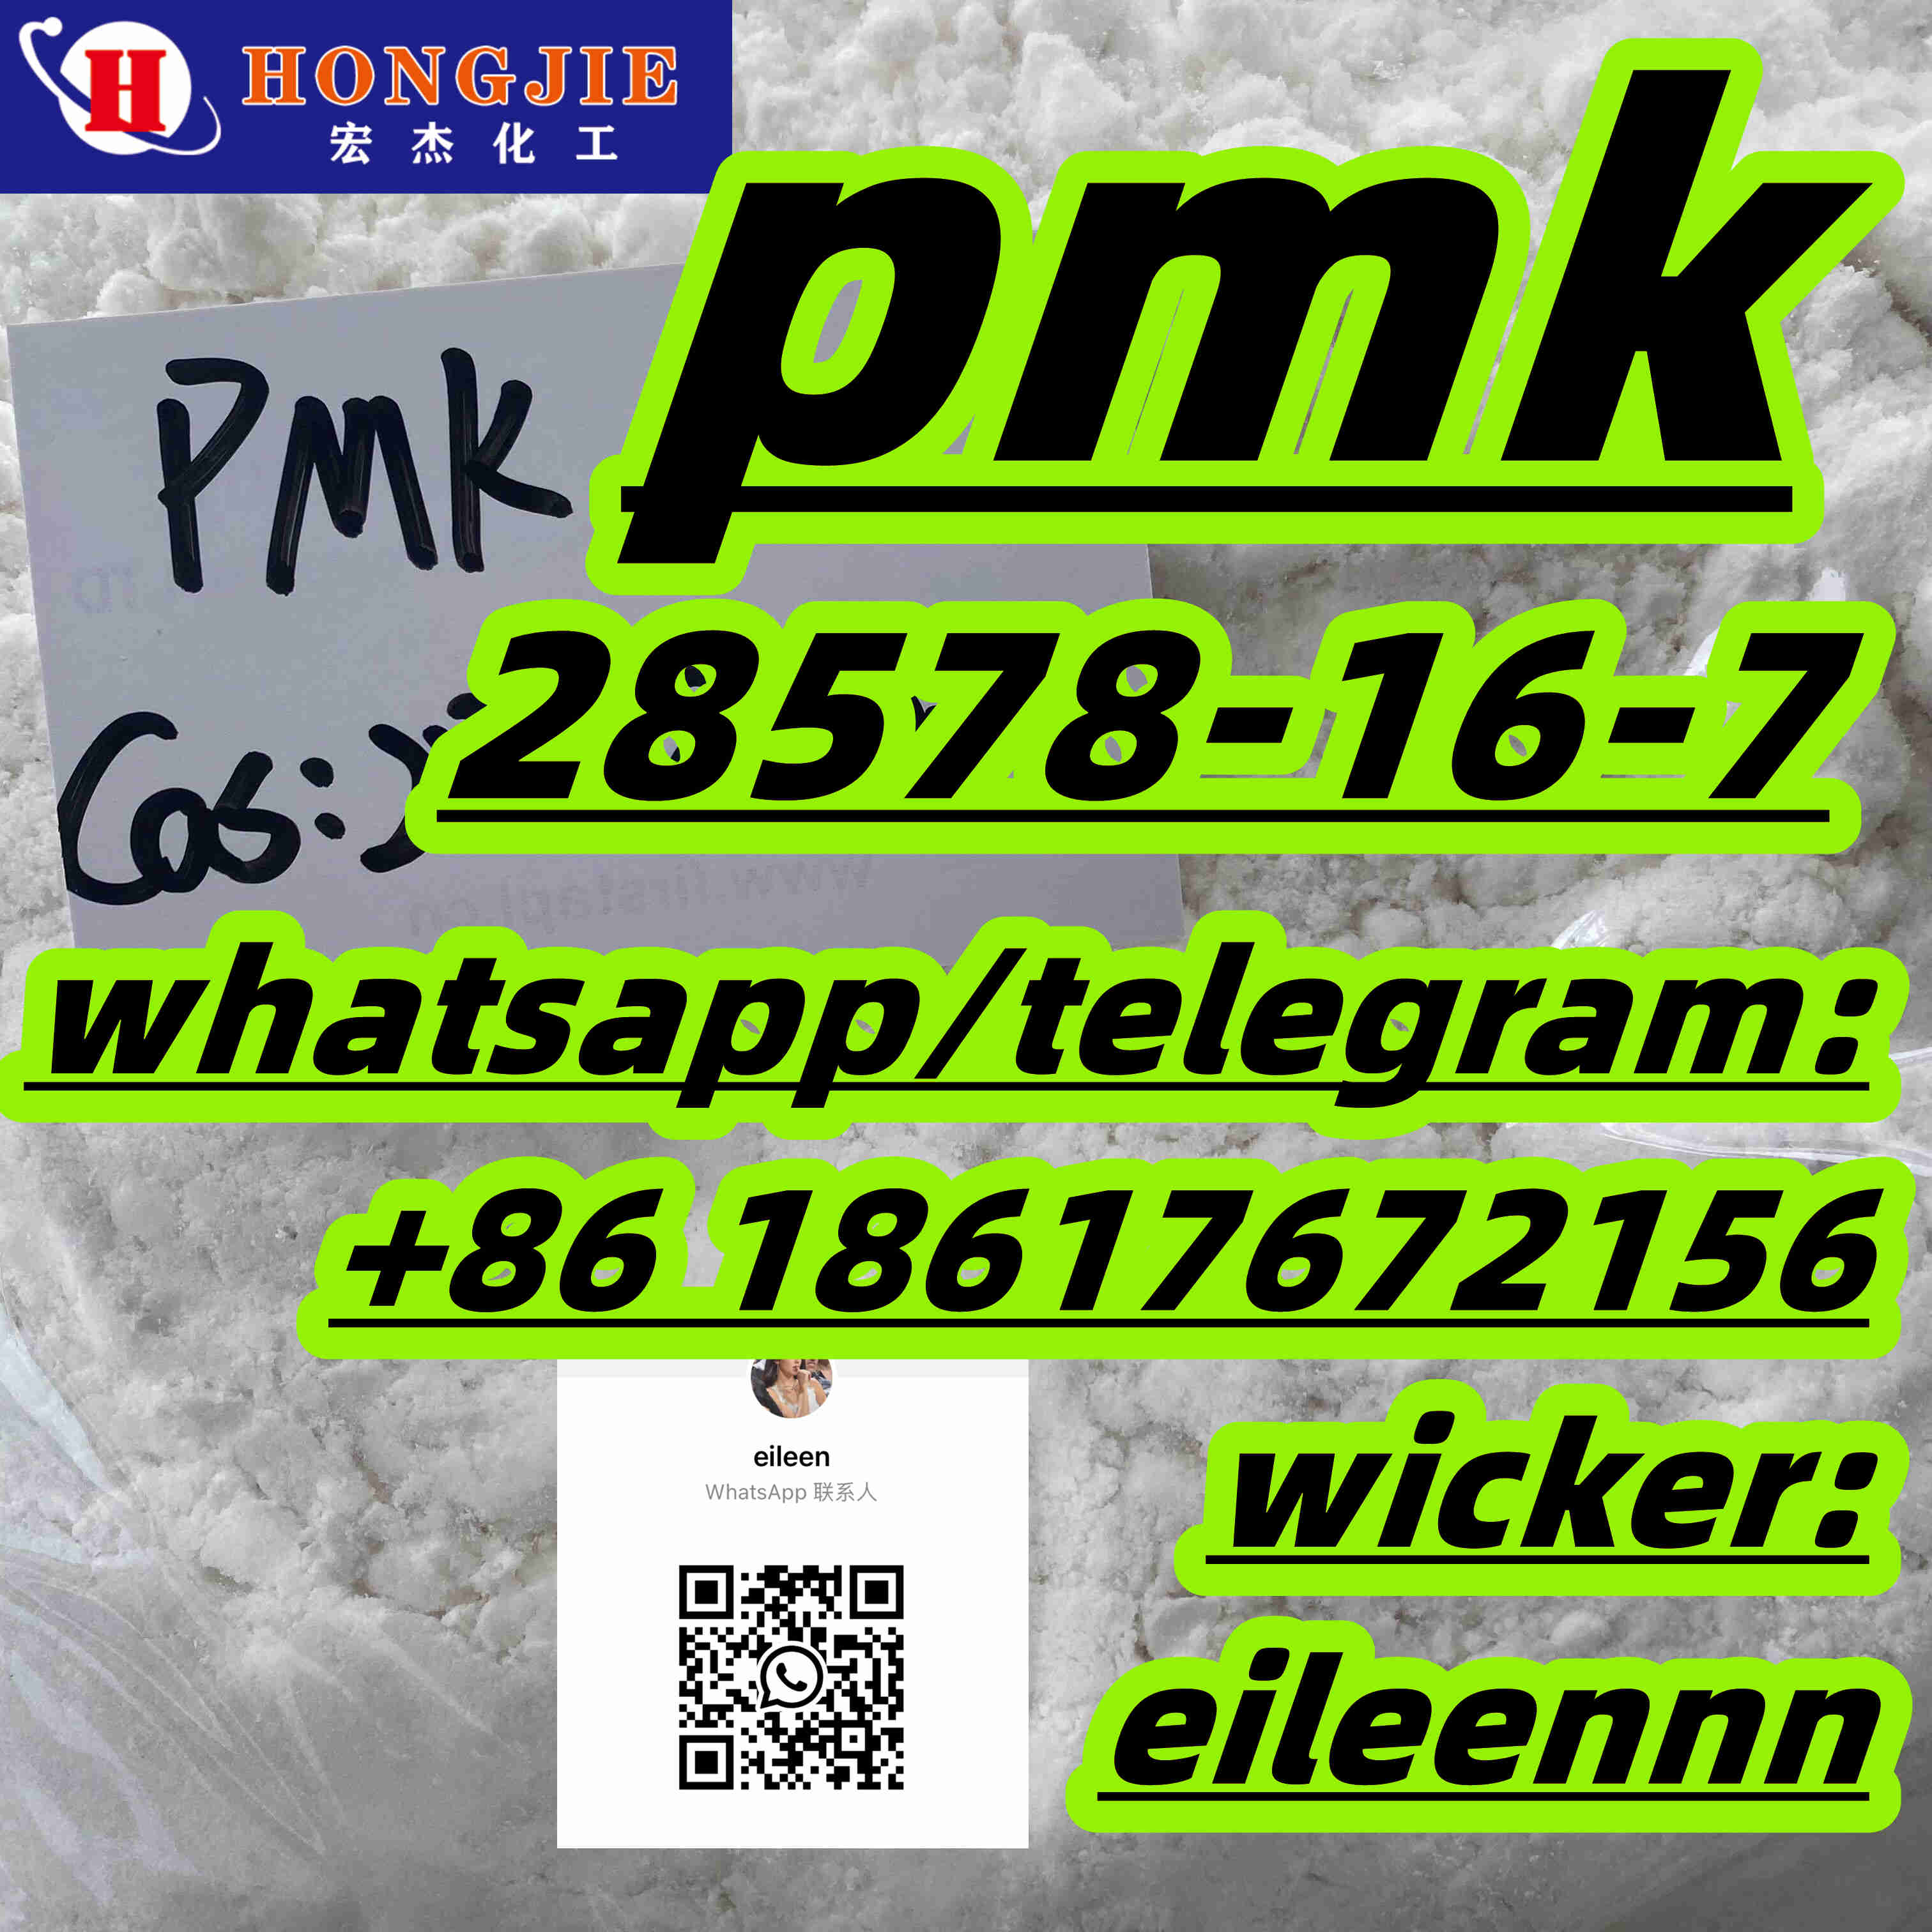 Whatsapp:+8618617672156 wicker:eileennn pmk trader supply - photo